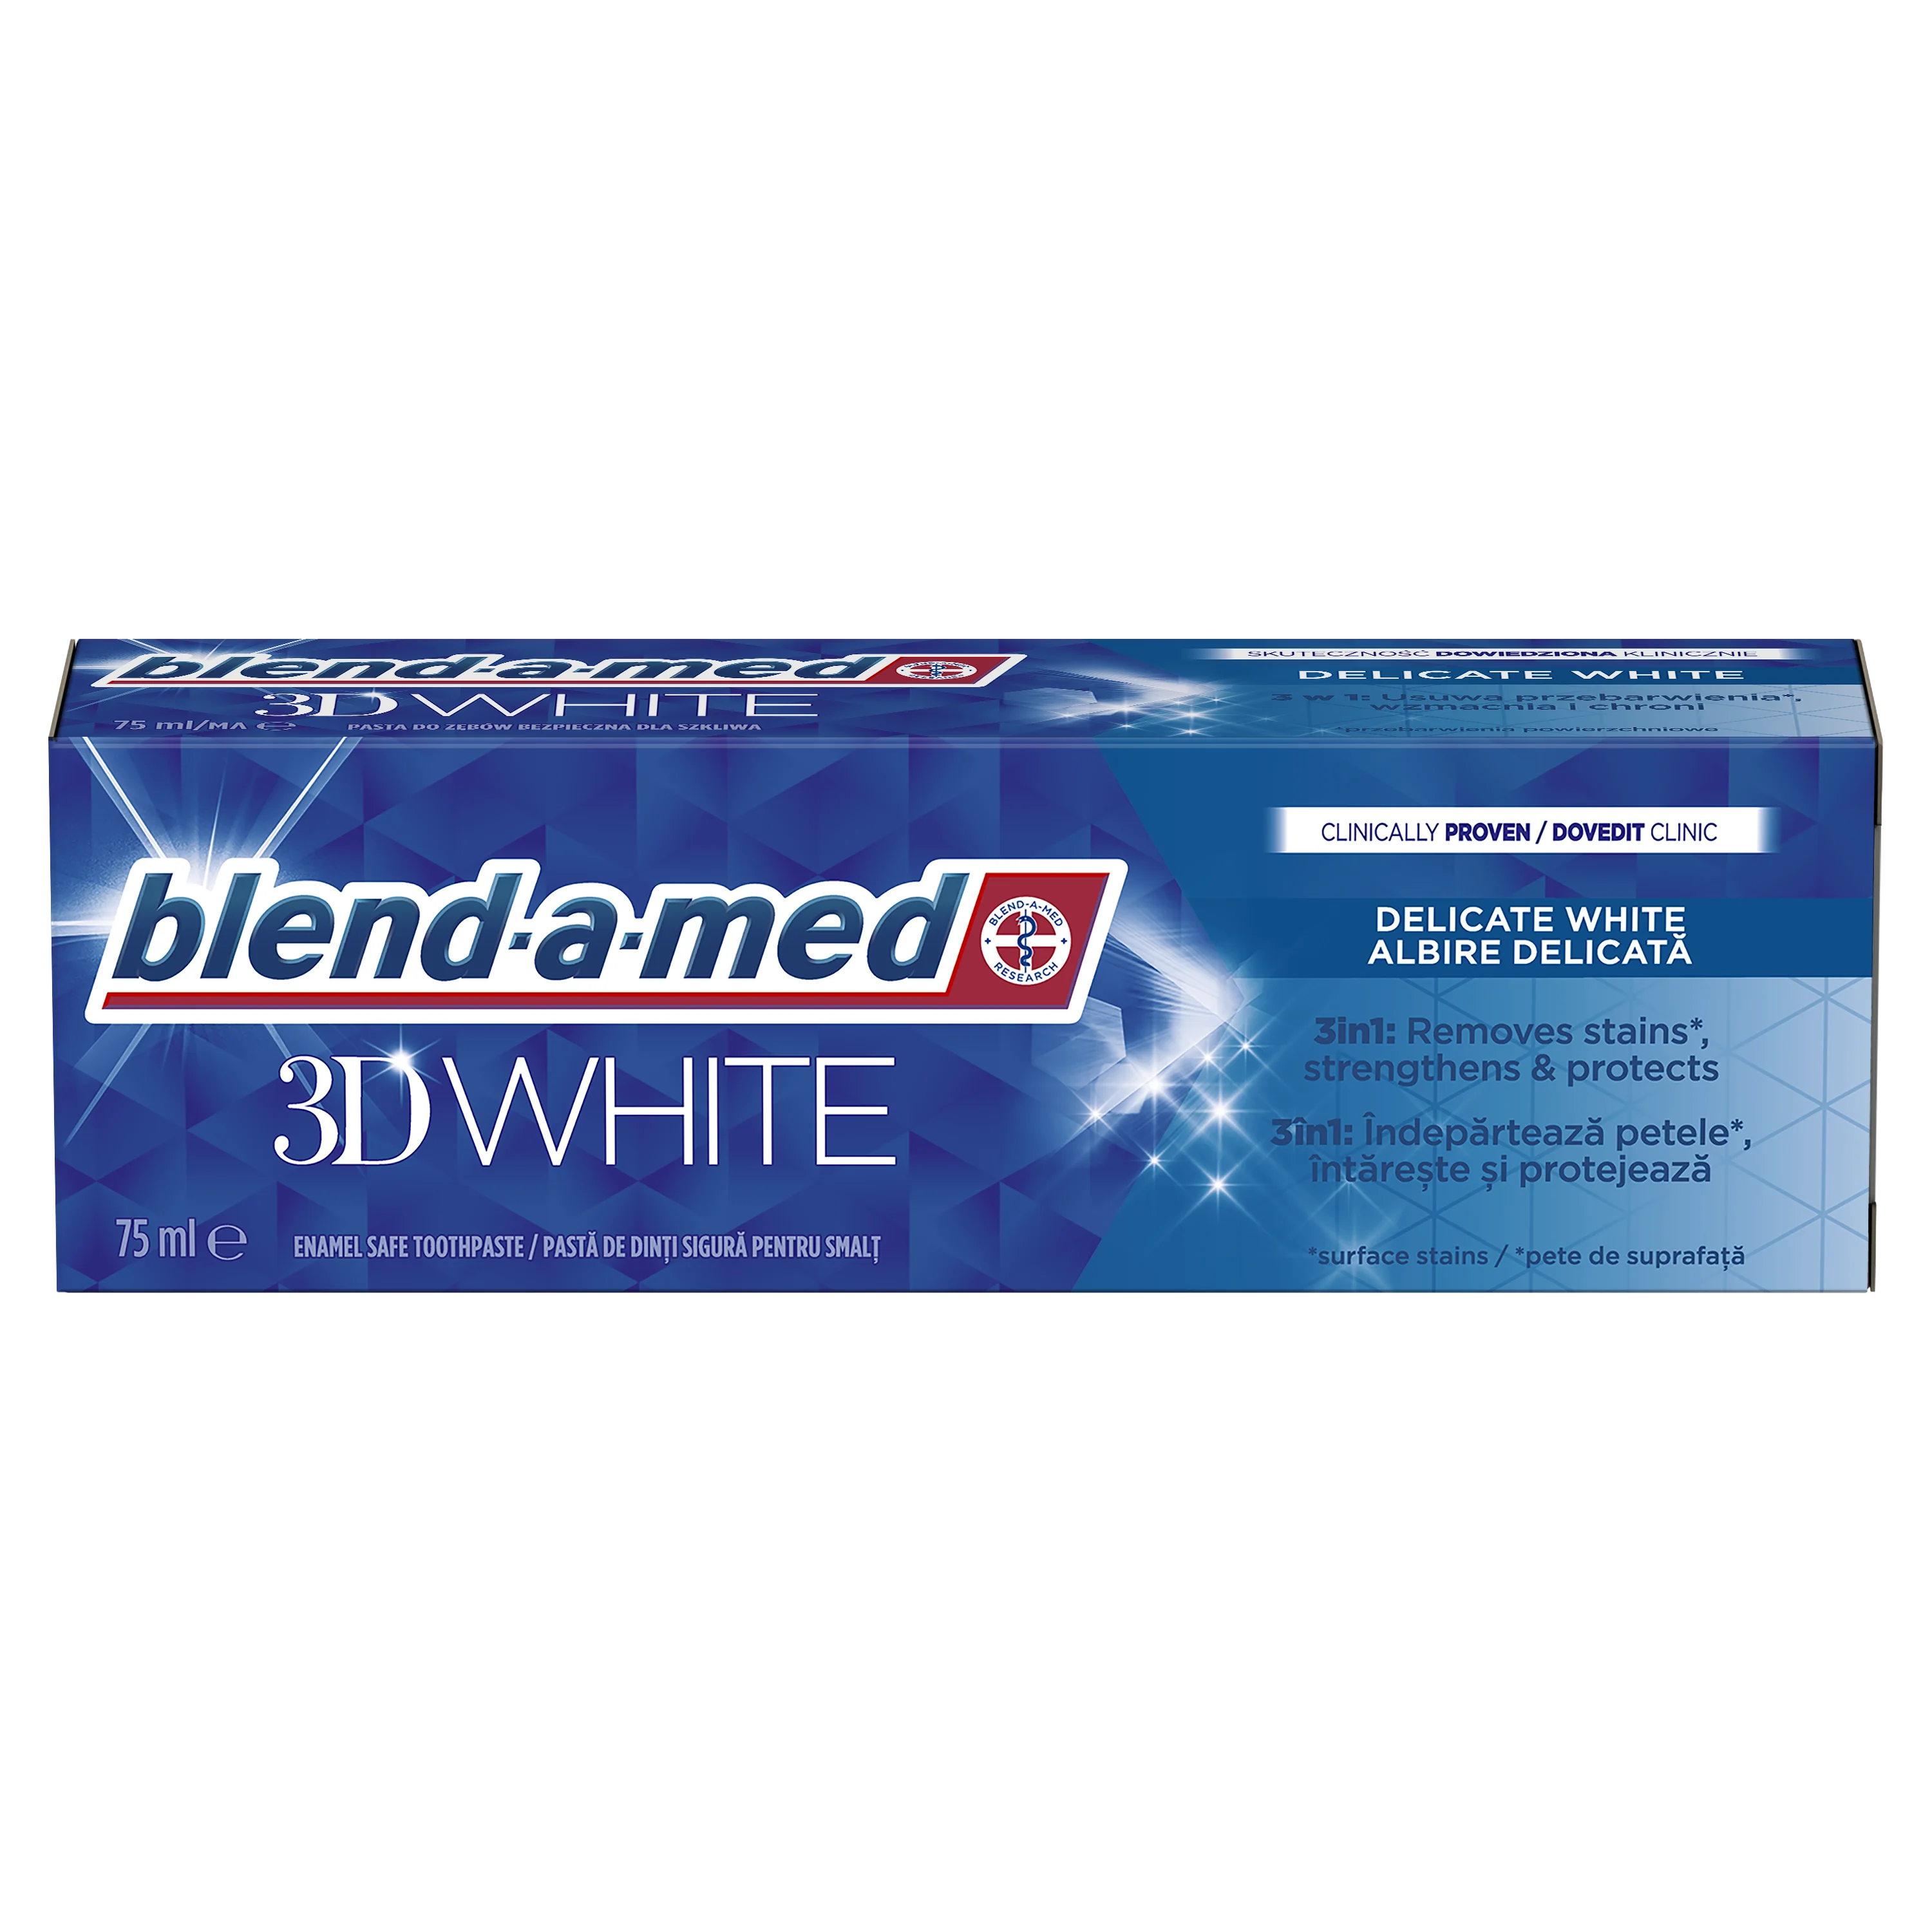 Blend-a-med 3D White Delicate White Fogkrém 